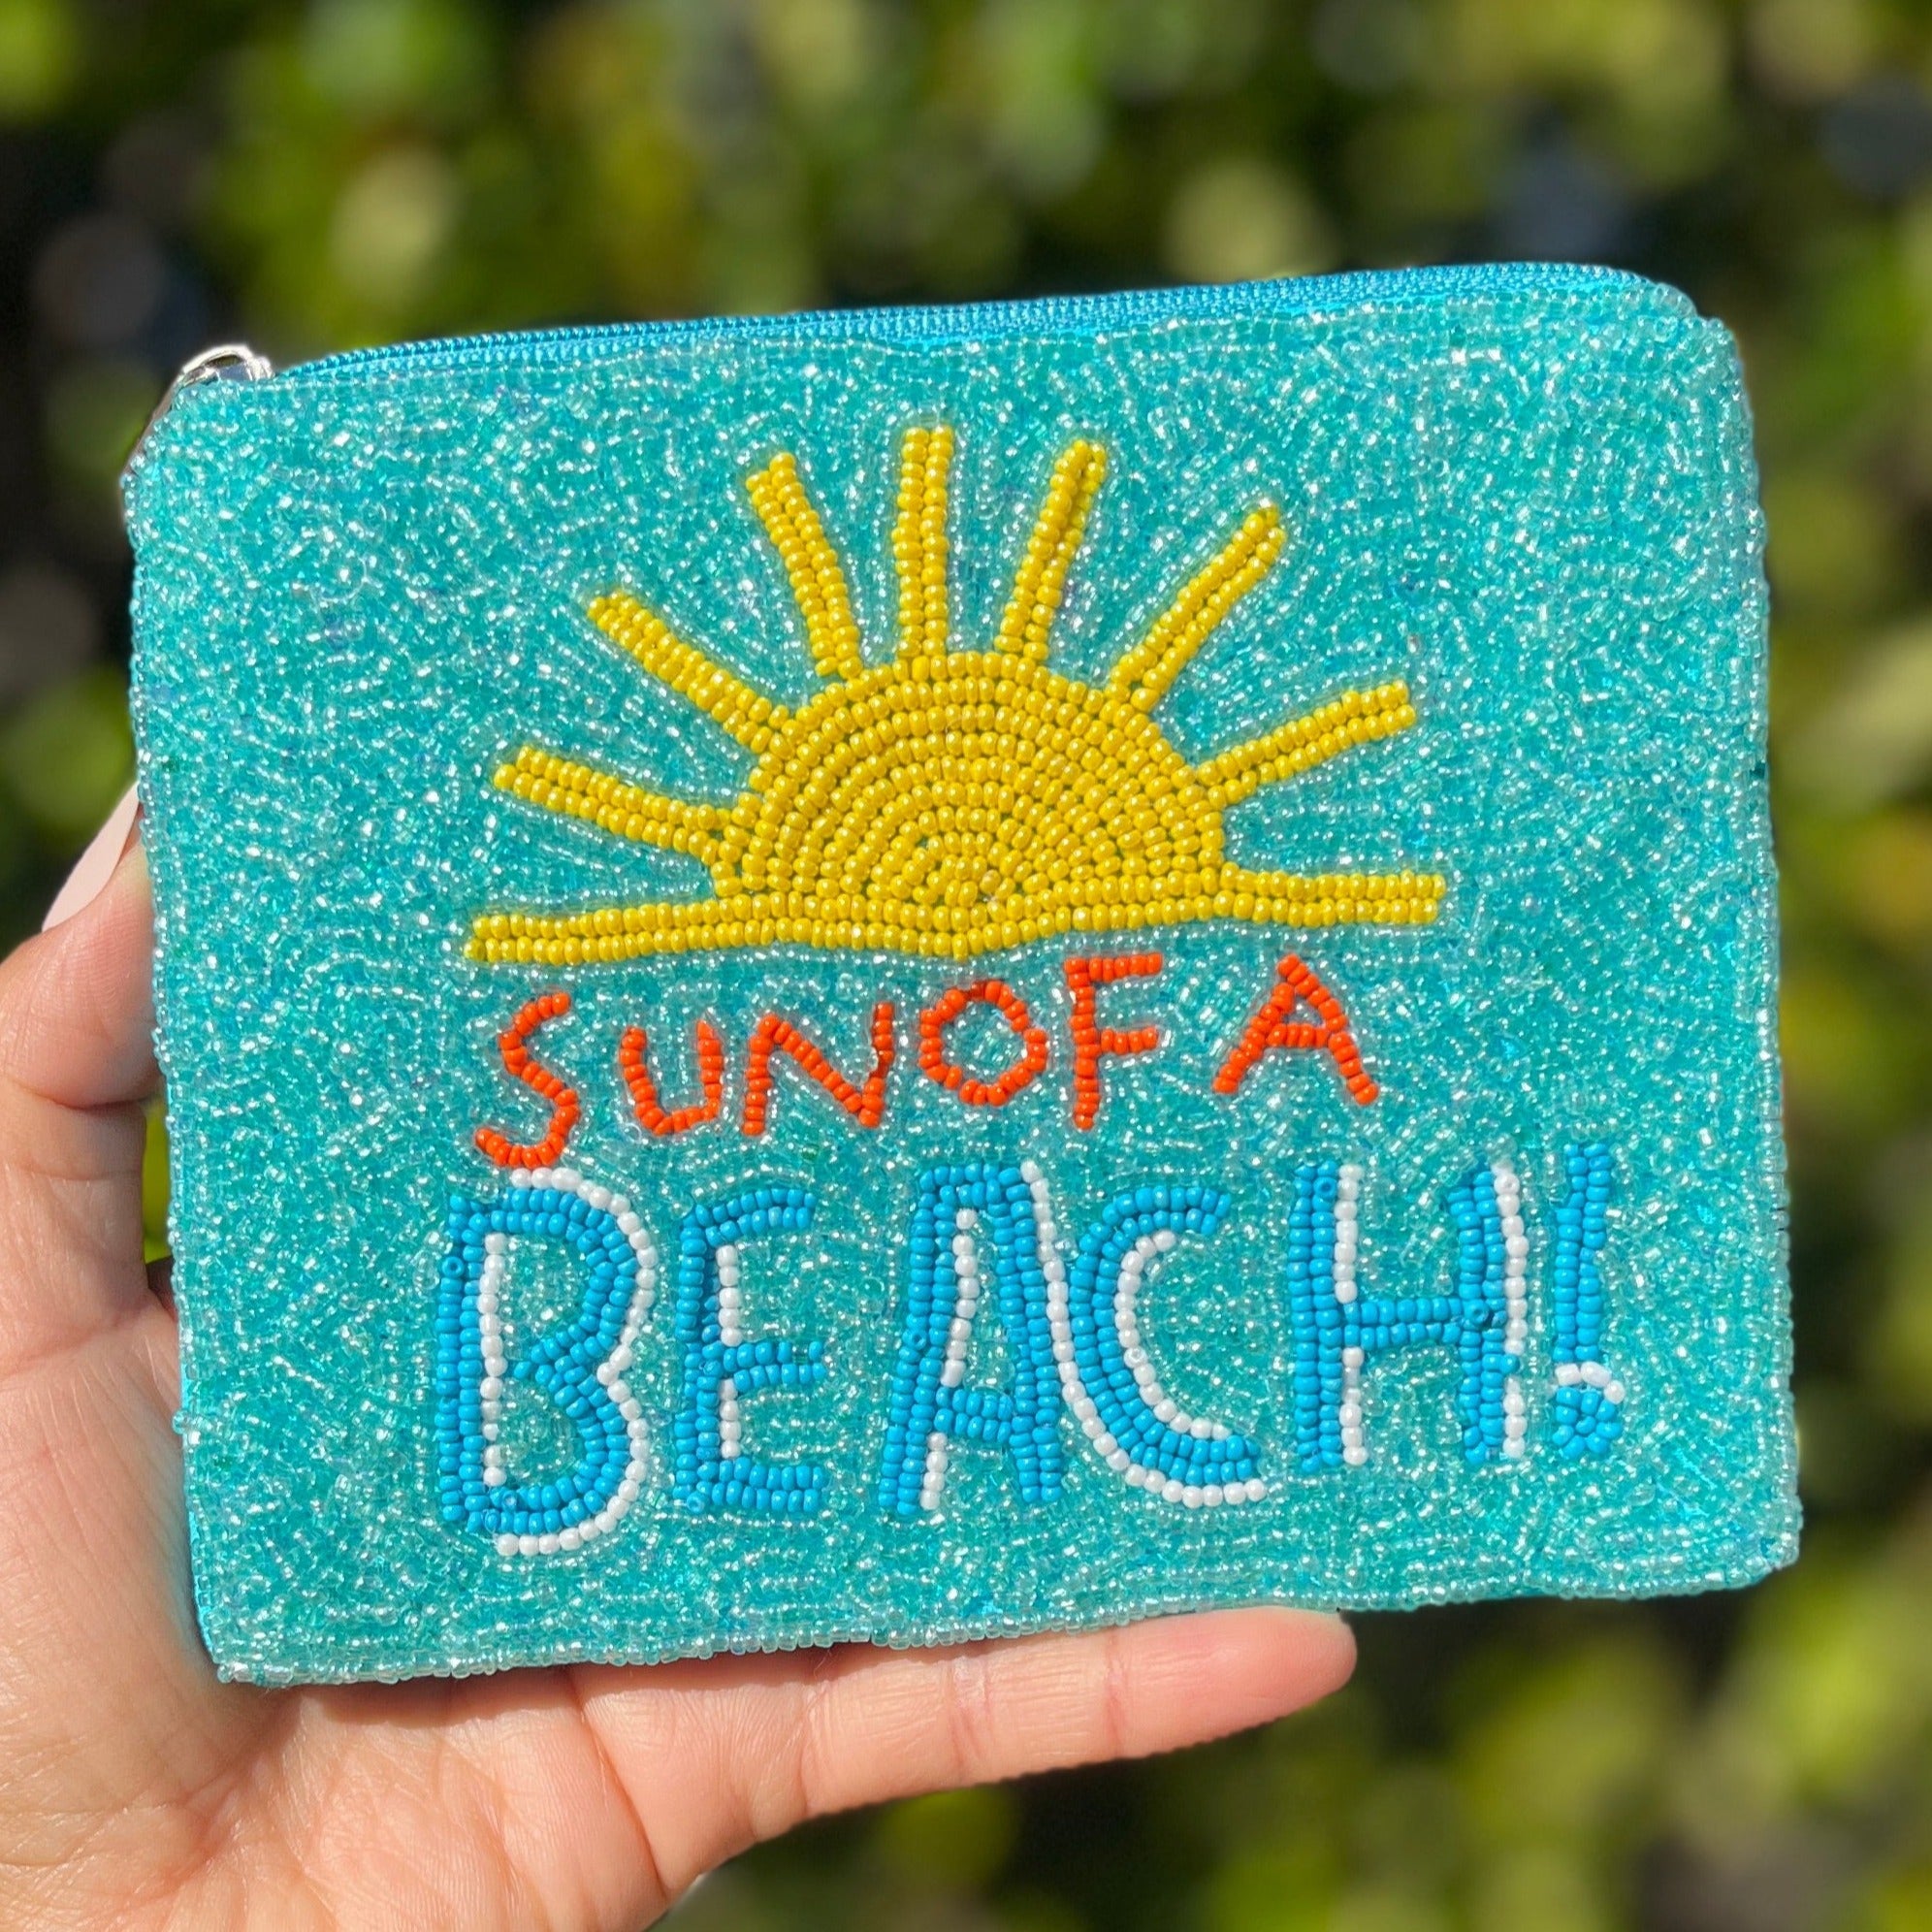 beach pouch bag